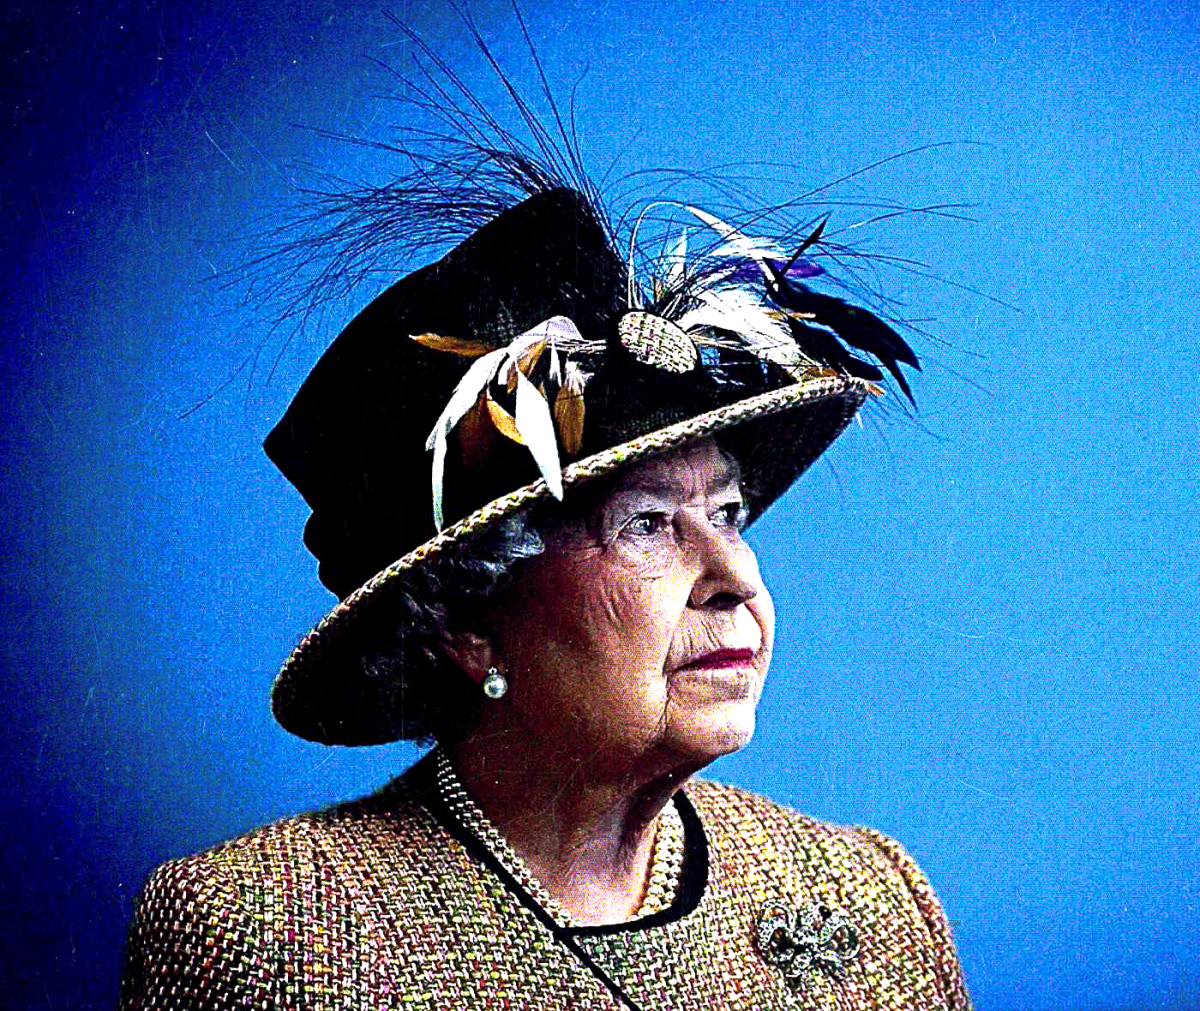 2012 portrait of Queen Elizabeth II.